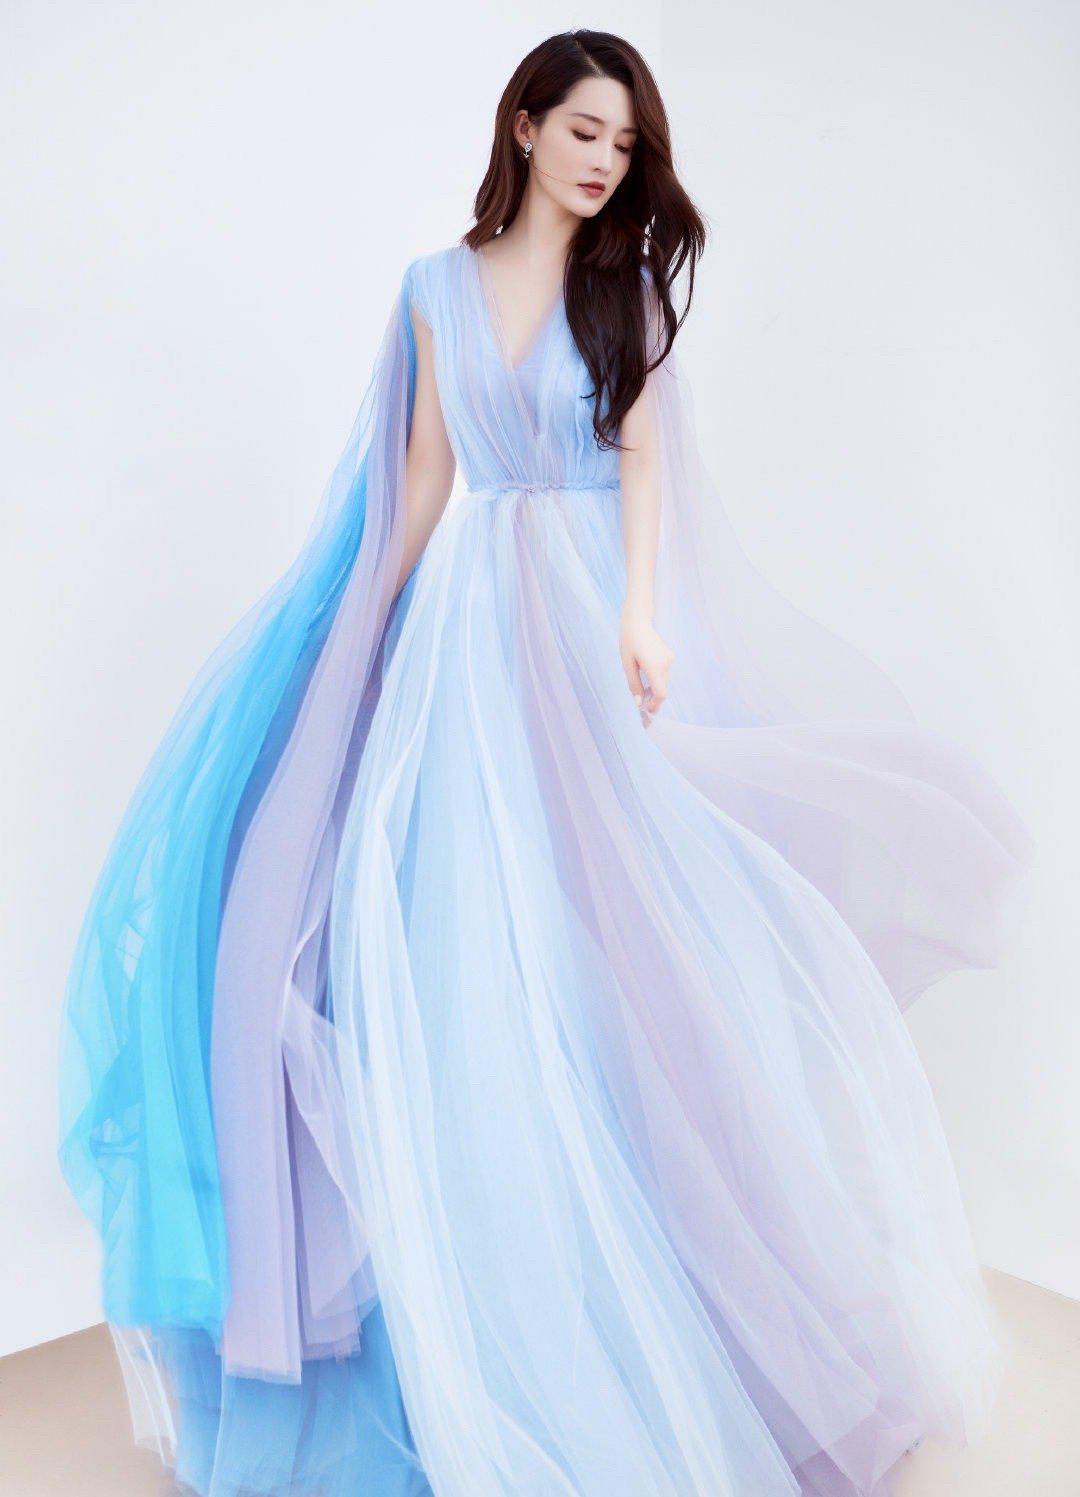 李沁藍紫漸變色紗裙亮相活動，披風設計又颯又美，仙女本人沒錯瞭-圖3